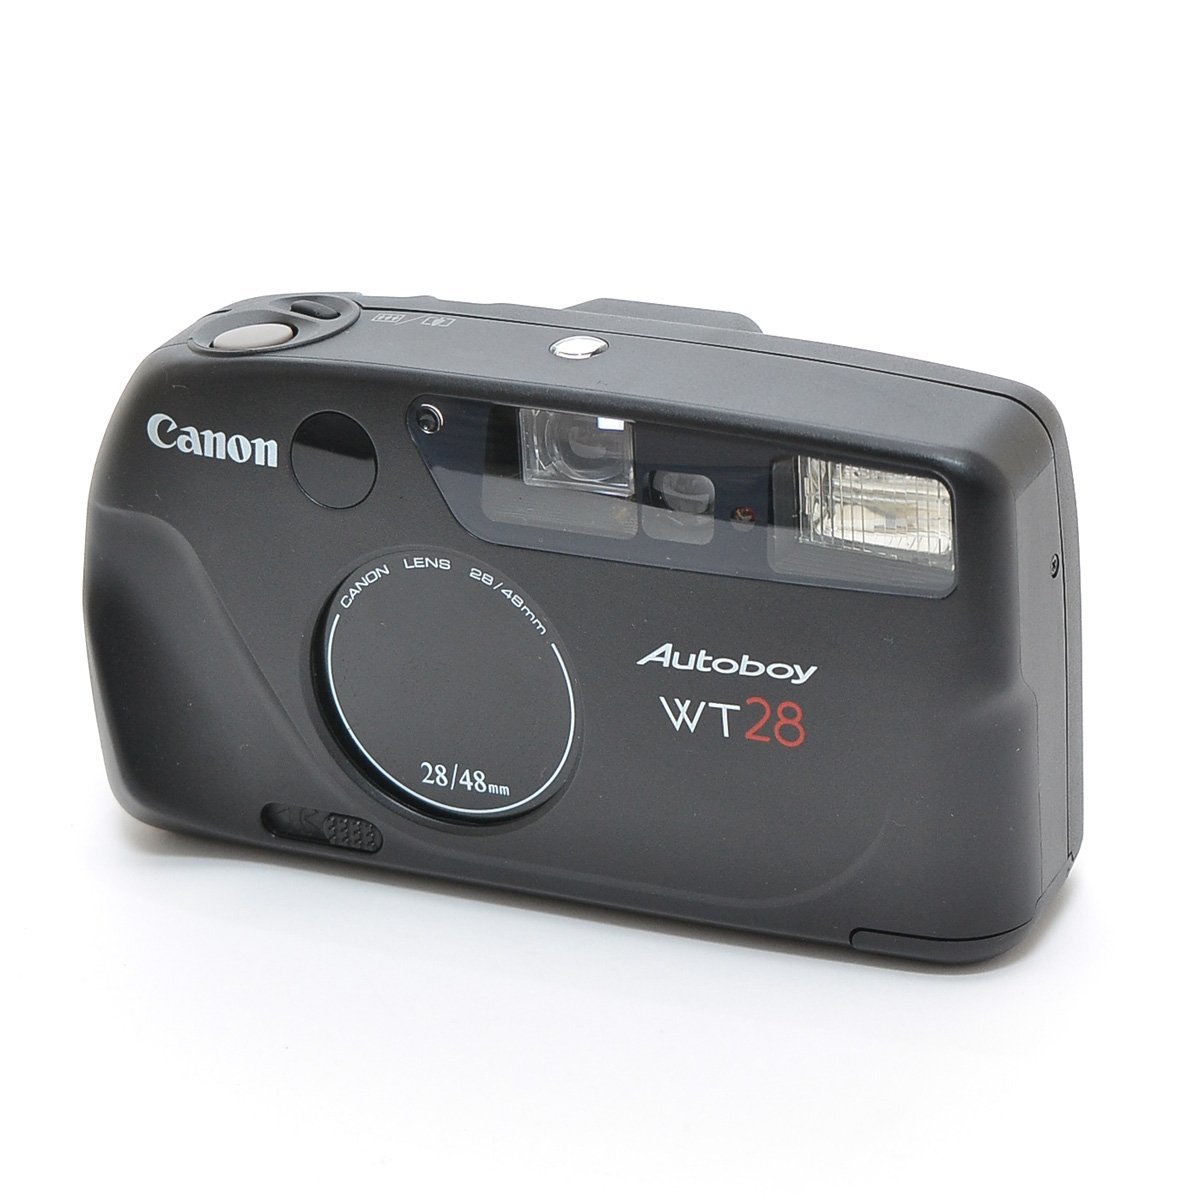 ▽447636 ジャンク Canon キャノン Autoboy WT28 28/40mm オートボーイ フィルムカメラ_画像1